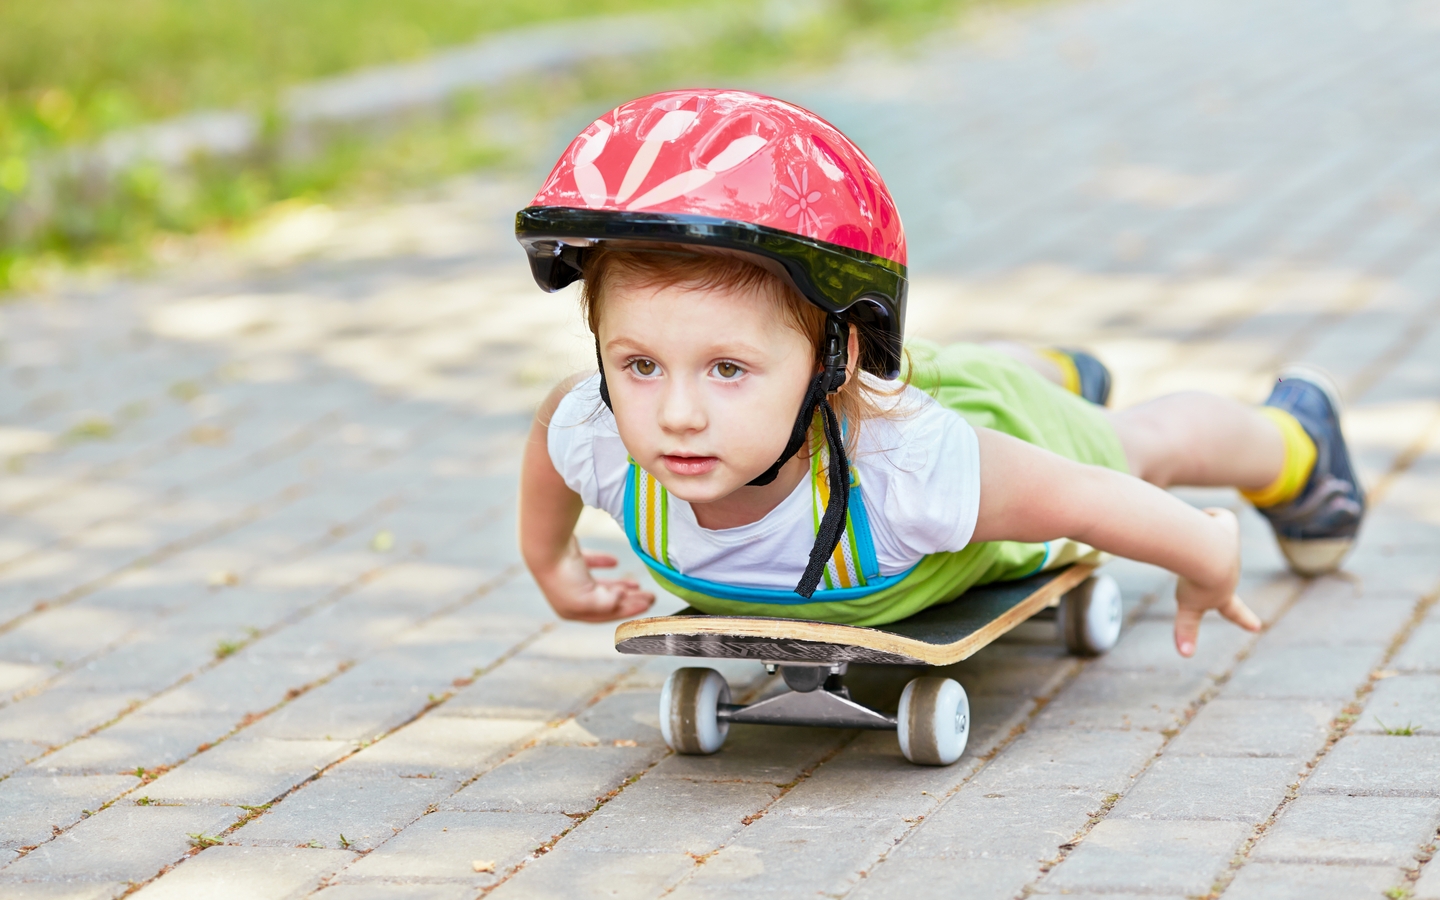 Картинка: Мальчик, ребёнок, катается, скейт, шлем, лёжа